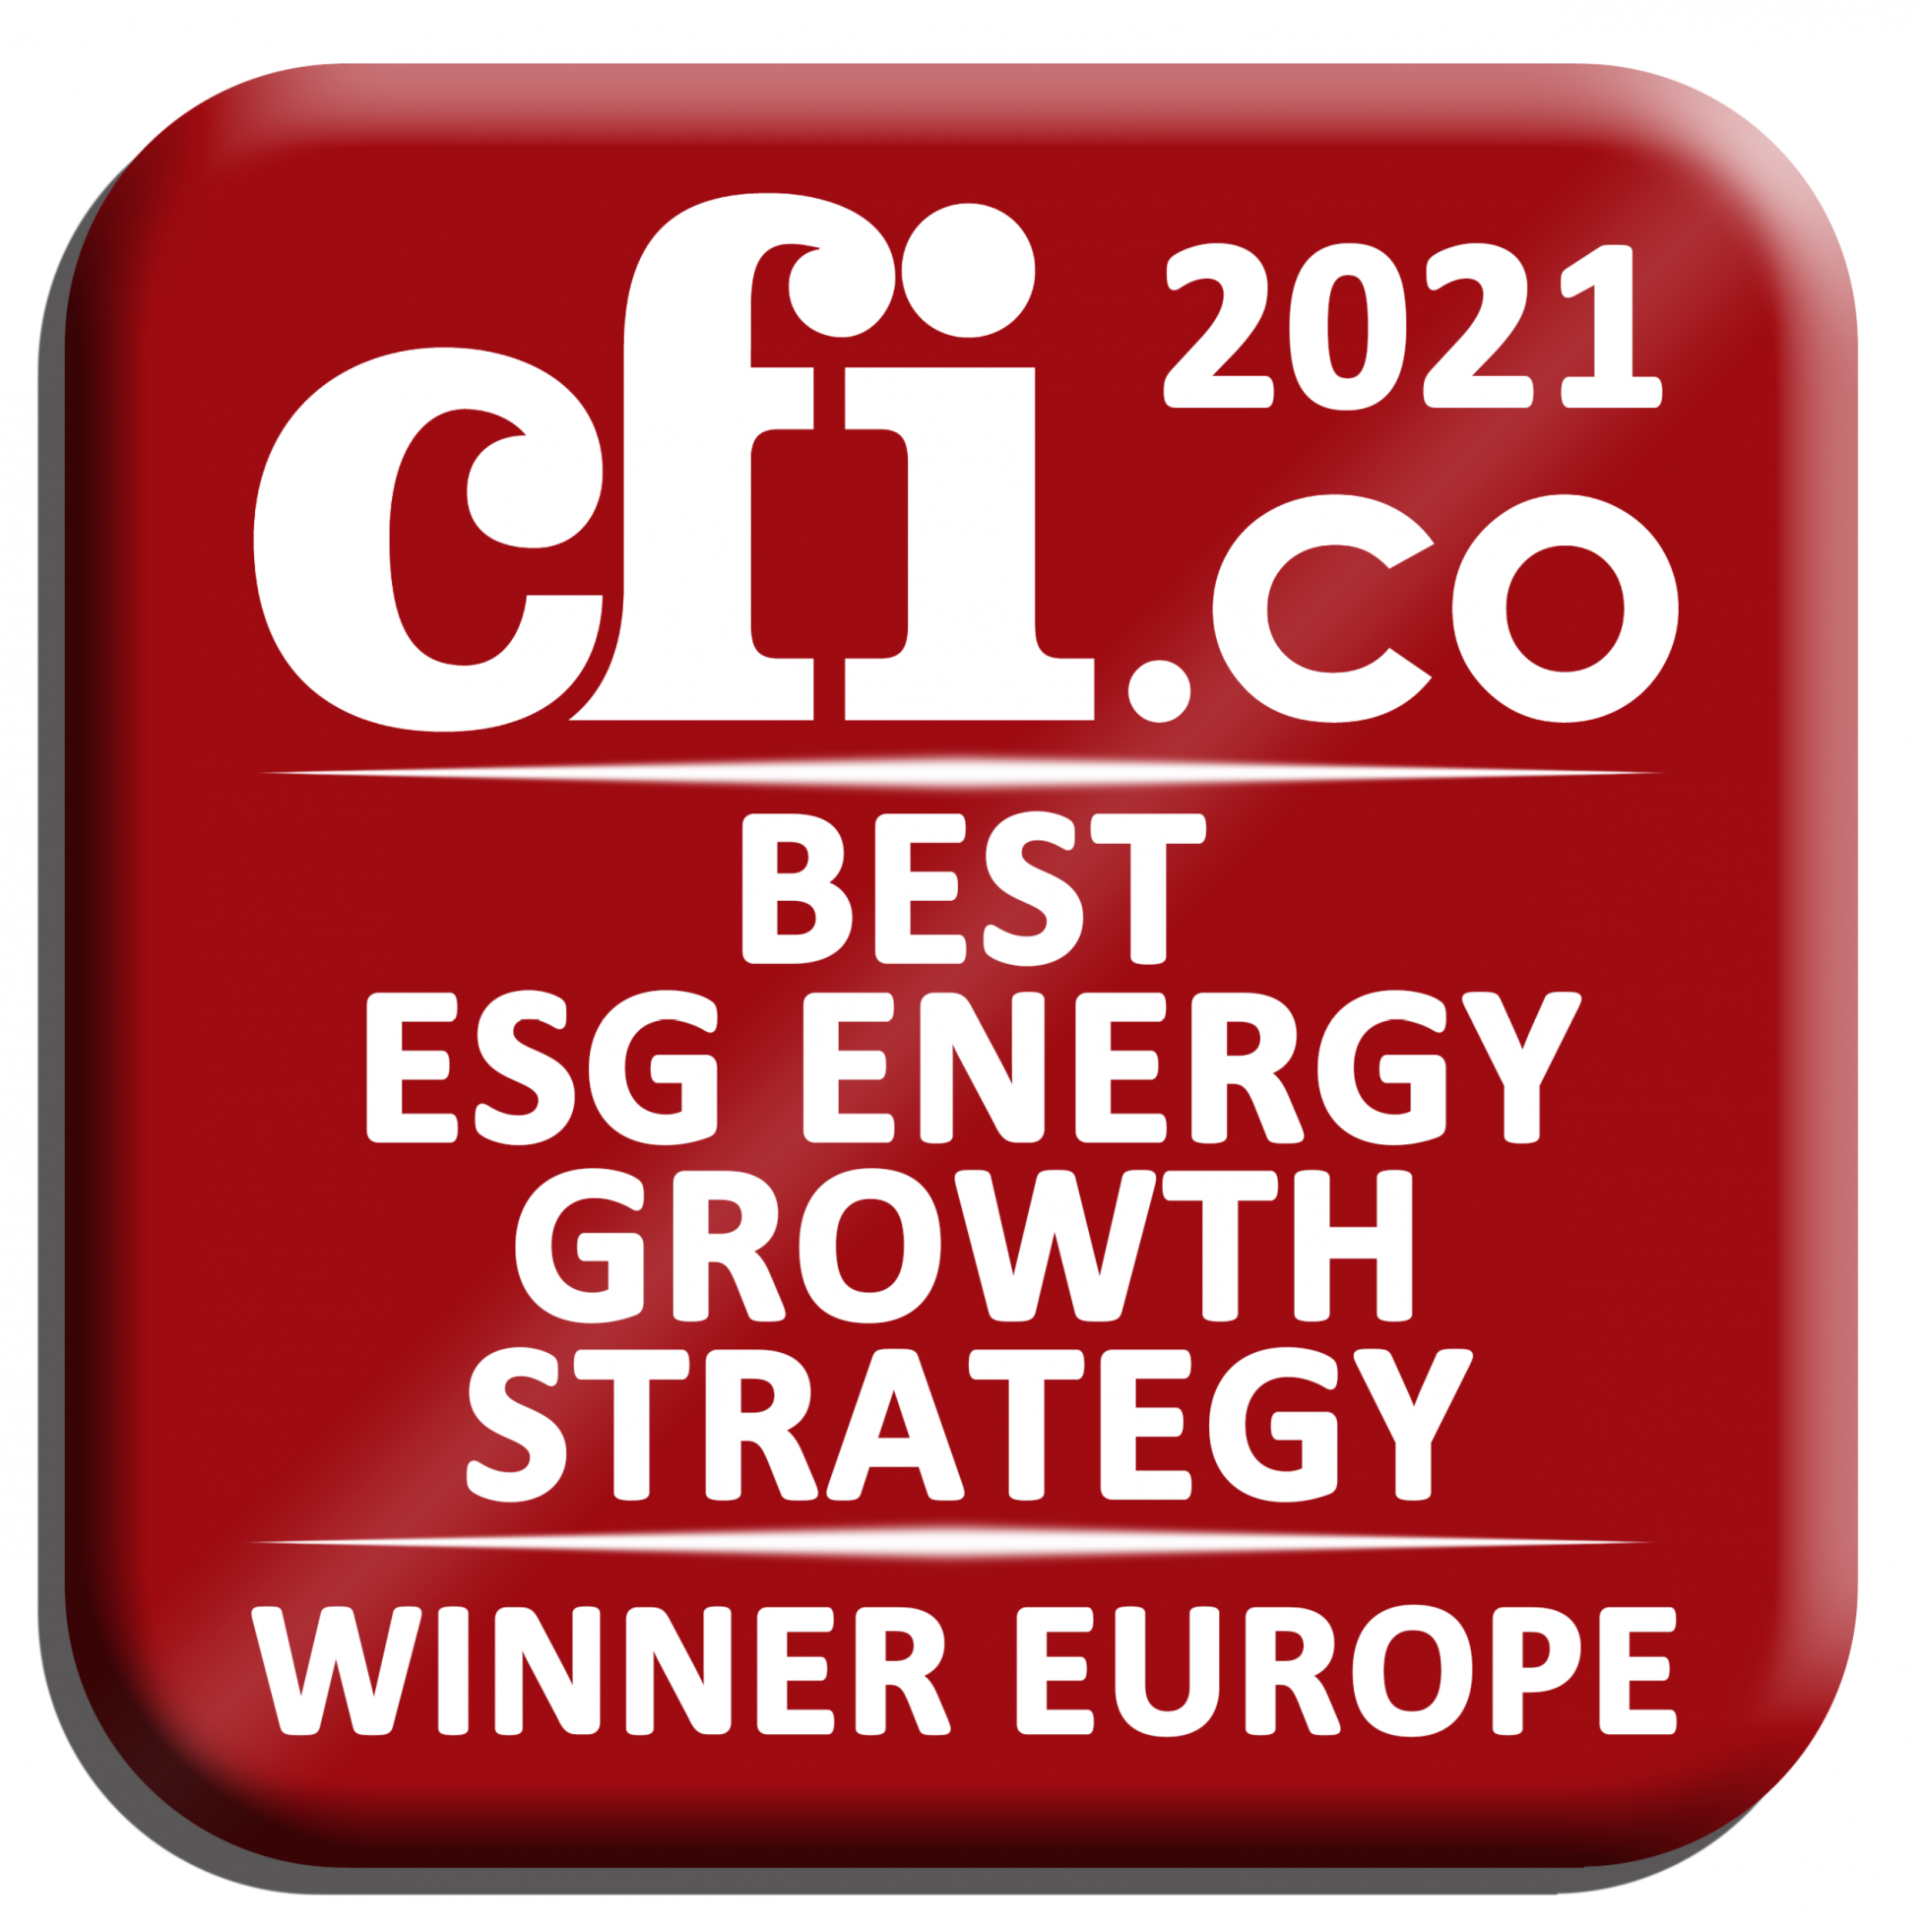 Η εταιρεία με την Καλύτερη Ενεργειακή Στρατηγική στην Ευρώπη